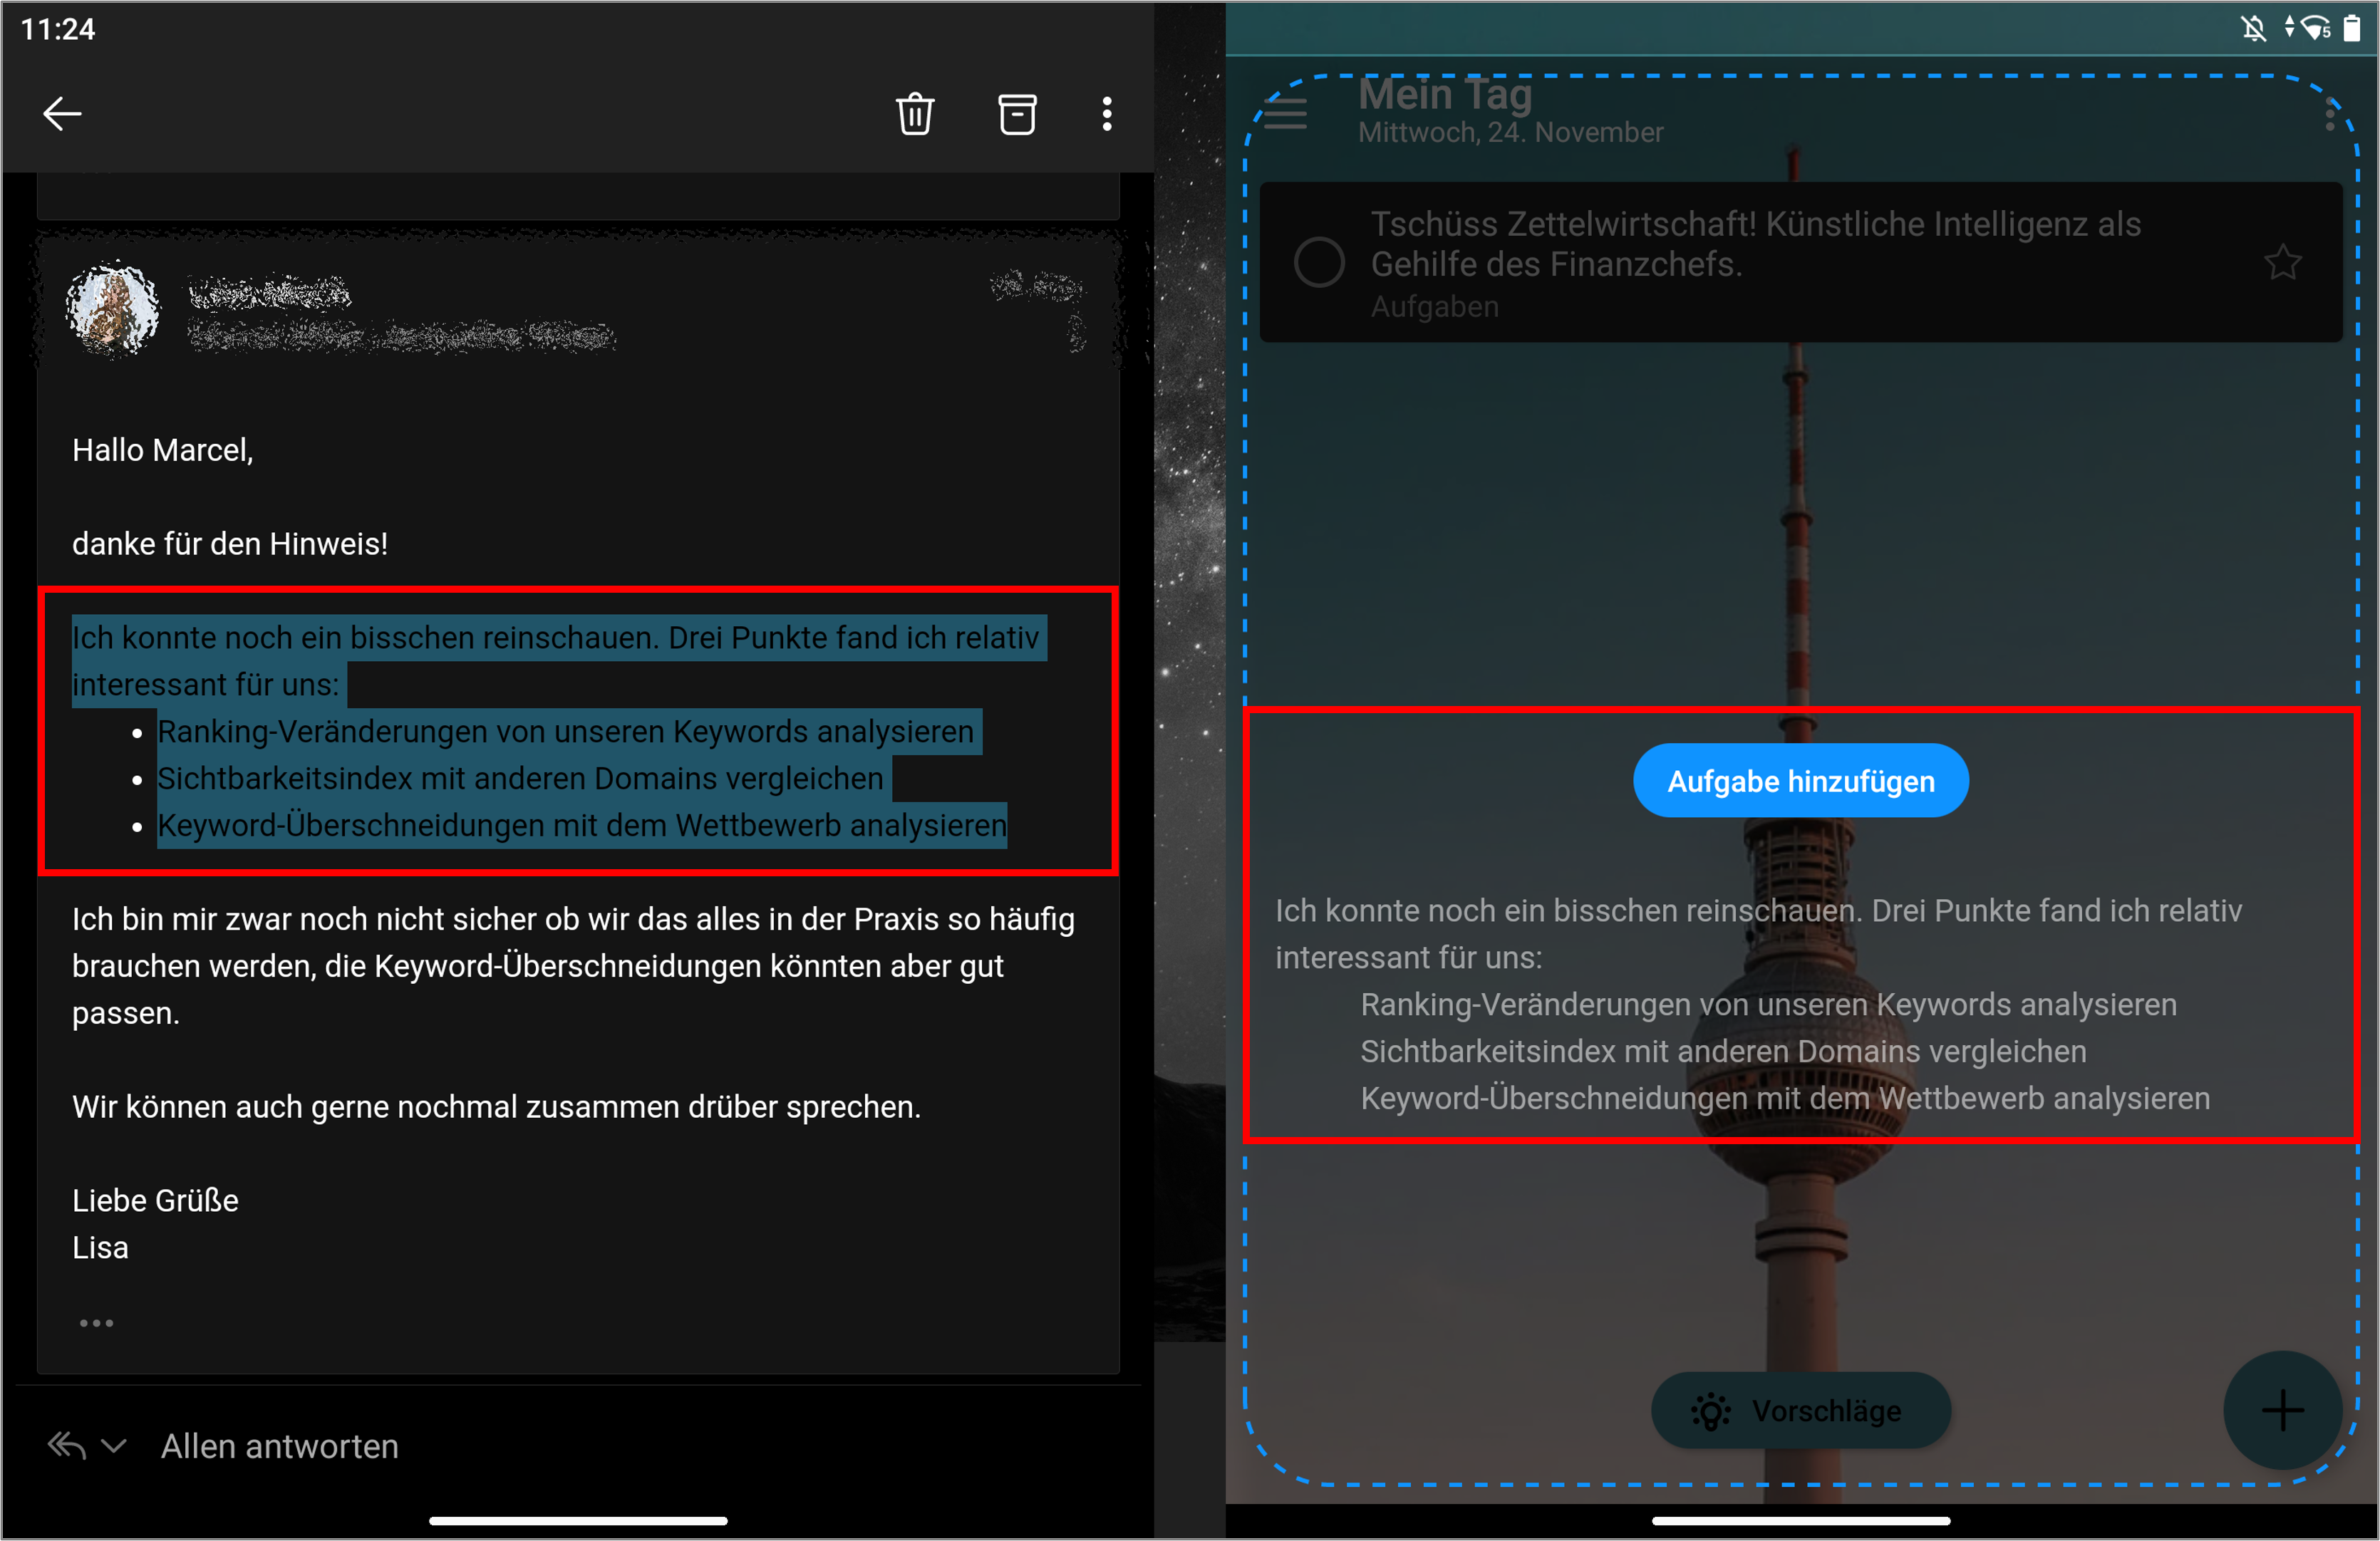 In der App-Gruppe "Plan" des Surface Duo können Sie schnell Aufgaben aus den E-Mails erstellen und somit Ihren Tag etc. planen.